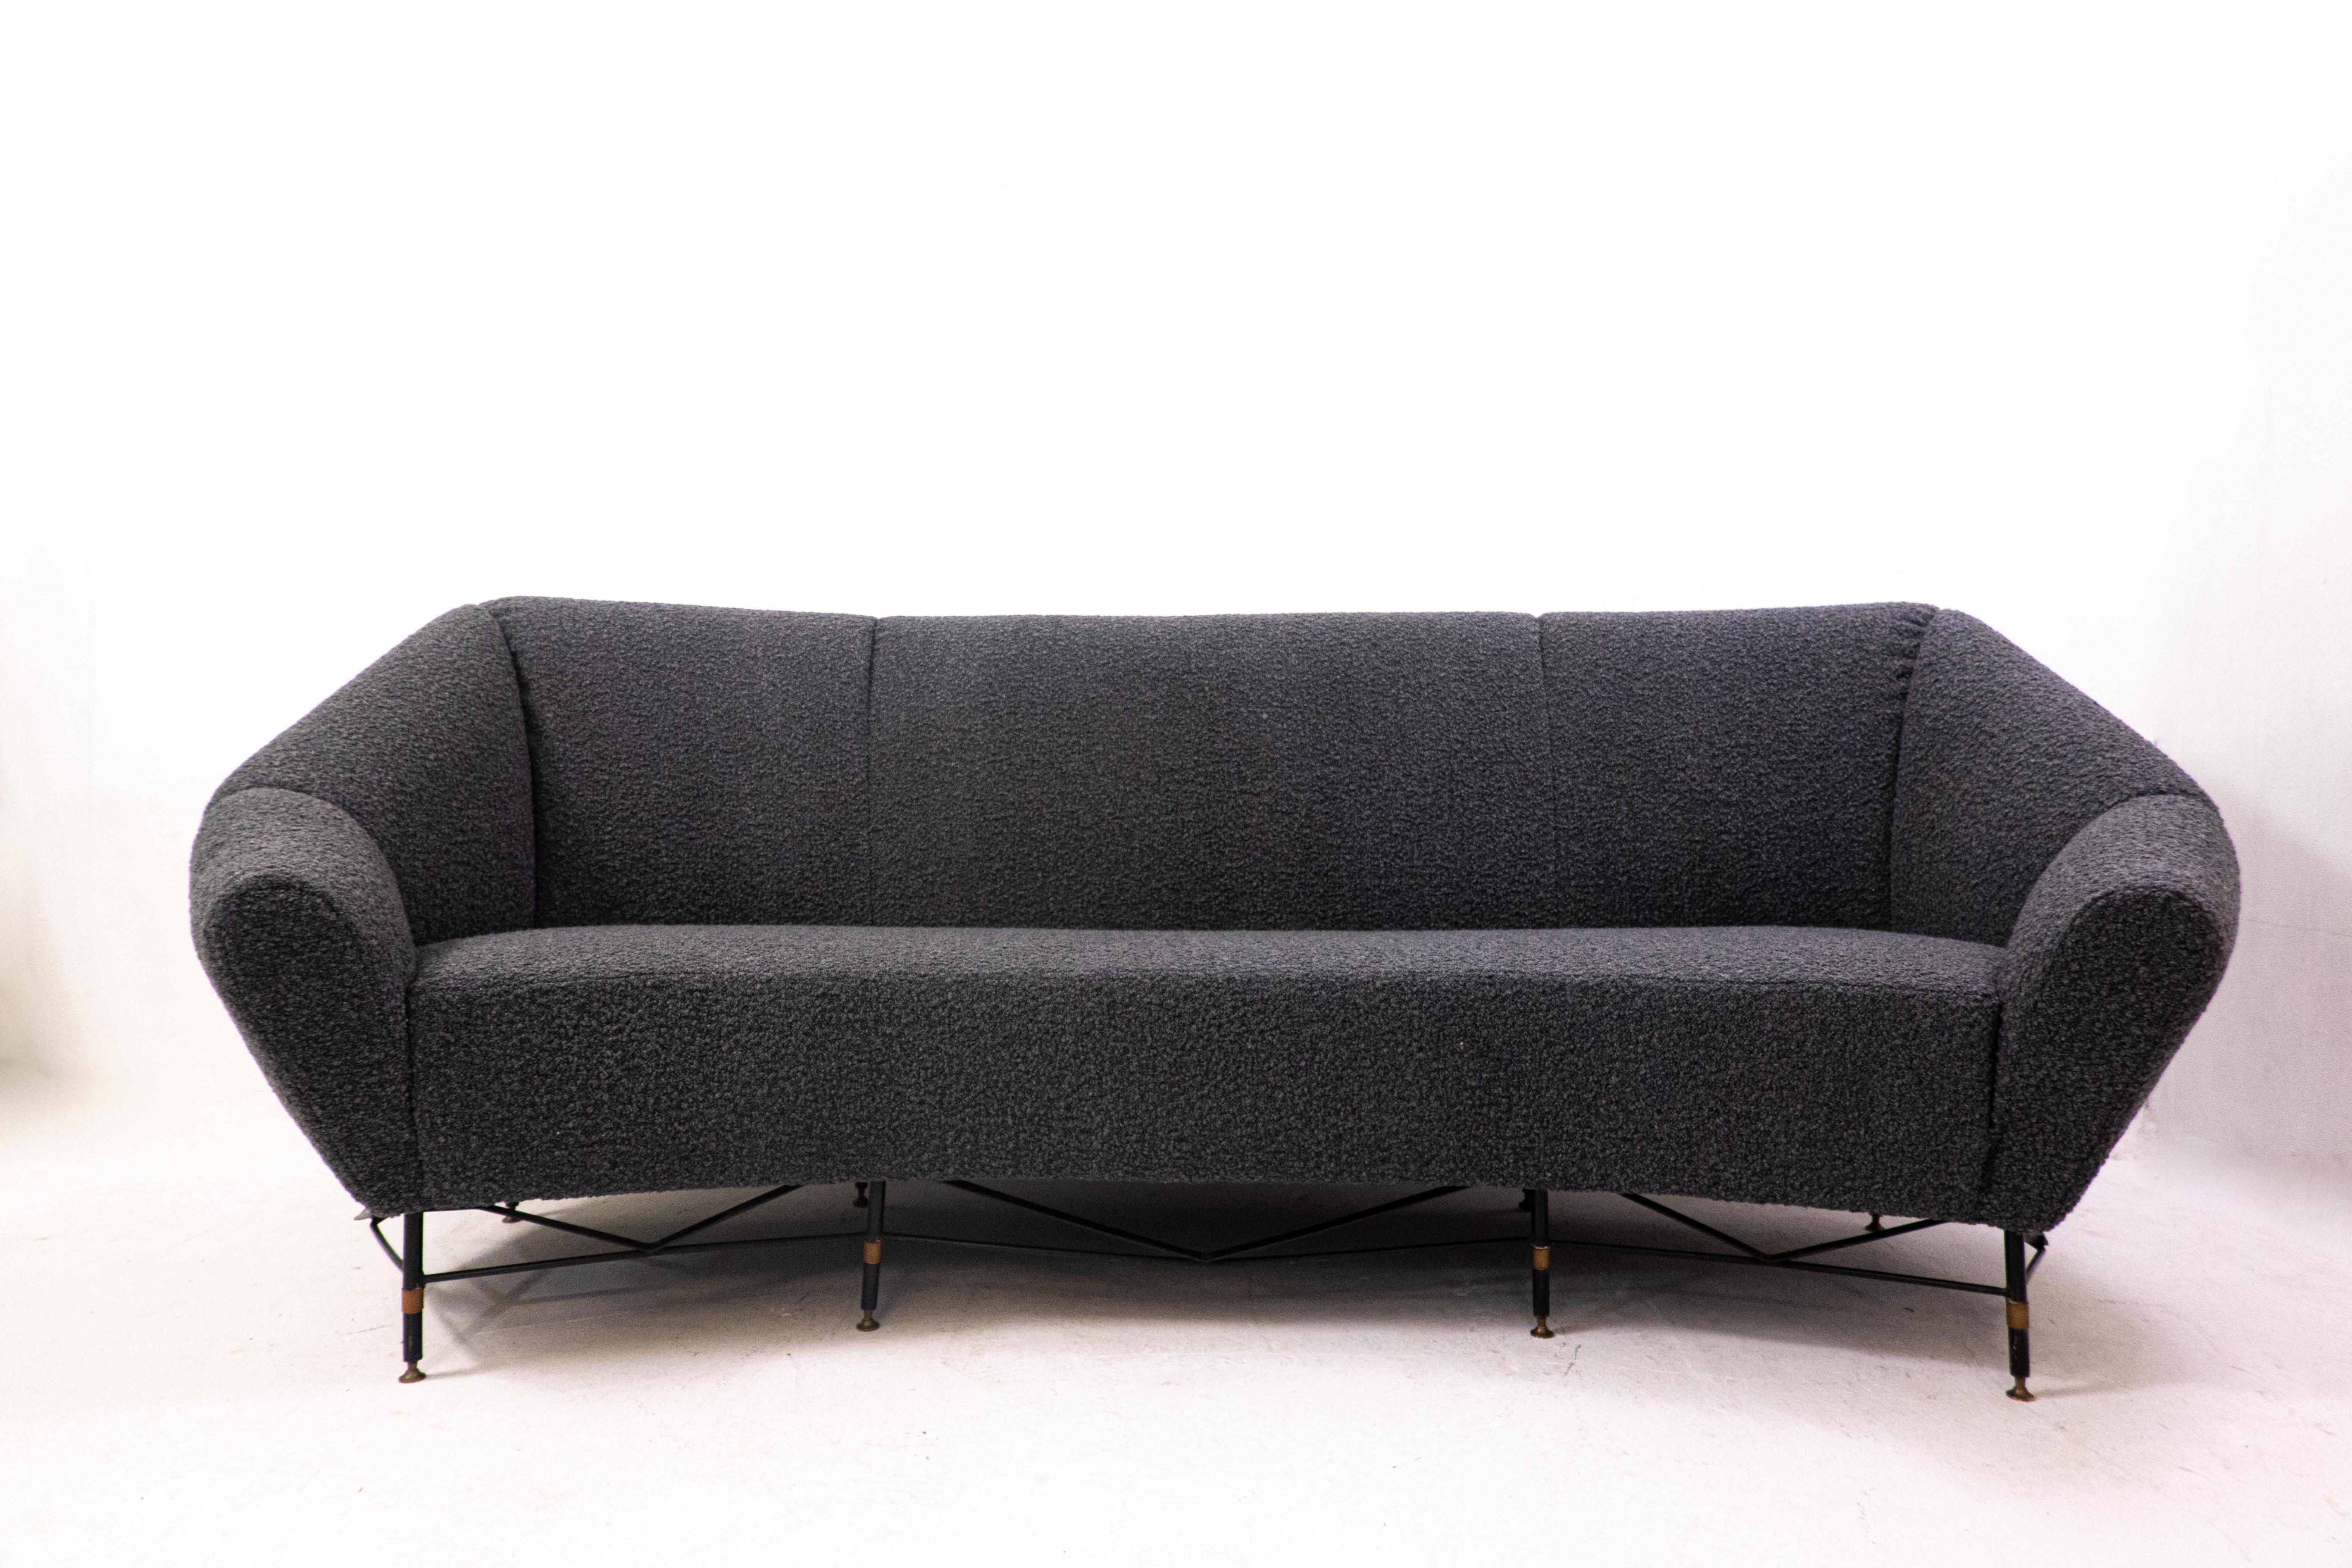 Mid-Century Modern Italian sofa, 1950s - New upholstery black bouclette.